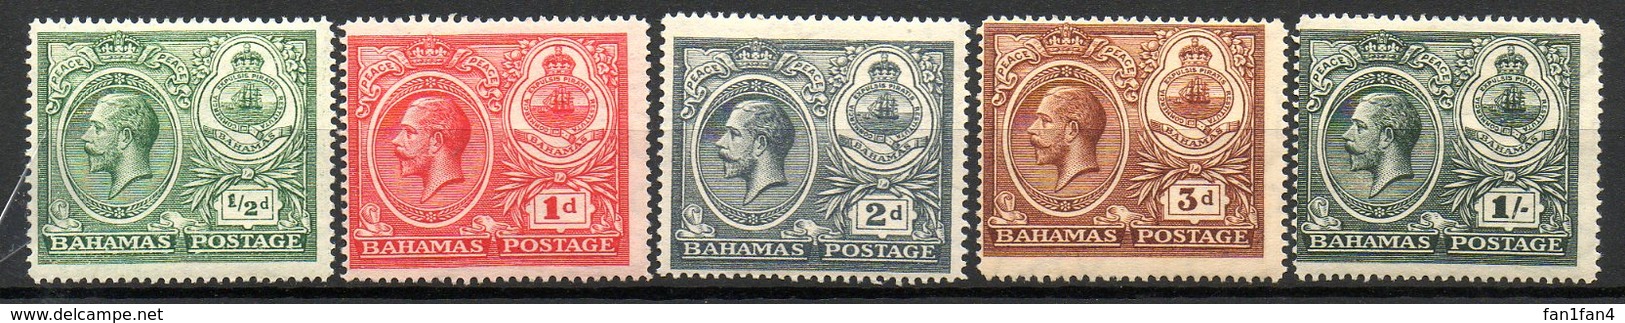 AMERIQUE CENTRALE - BAHAMAS - (Colonie Britannique) - 1920 - N° 70 à 74 - (Lot De 5 Valeurs Différentes) - Altri - America